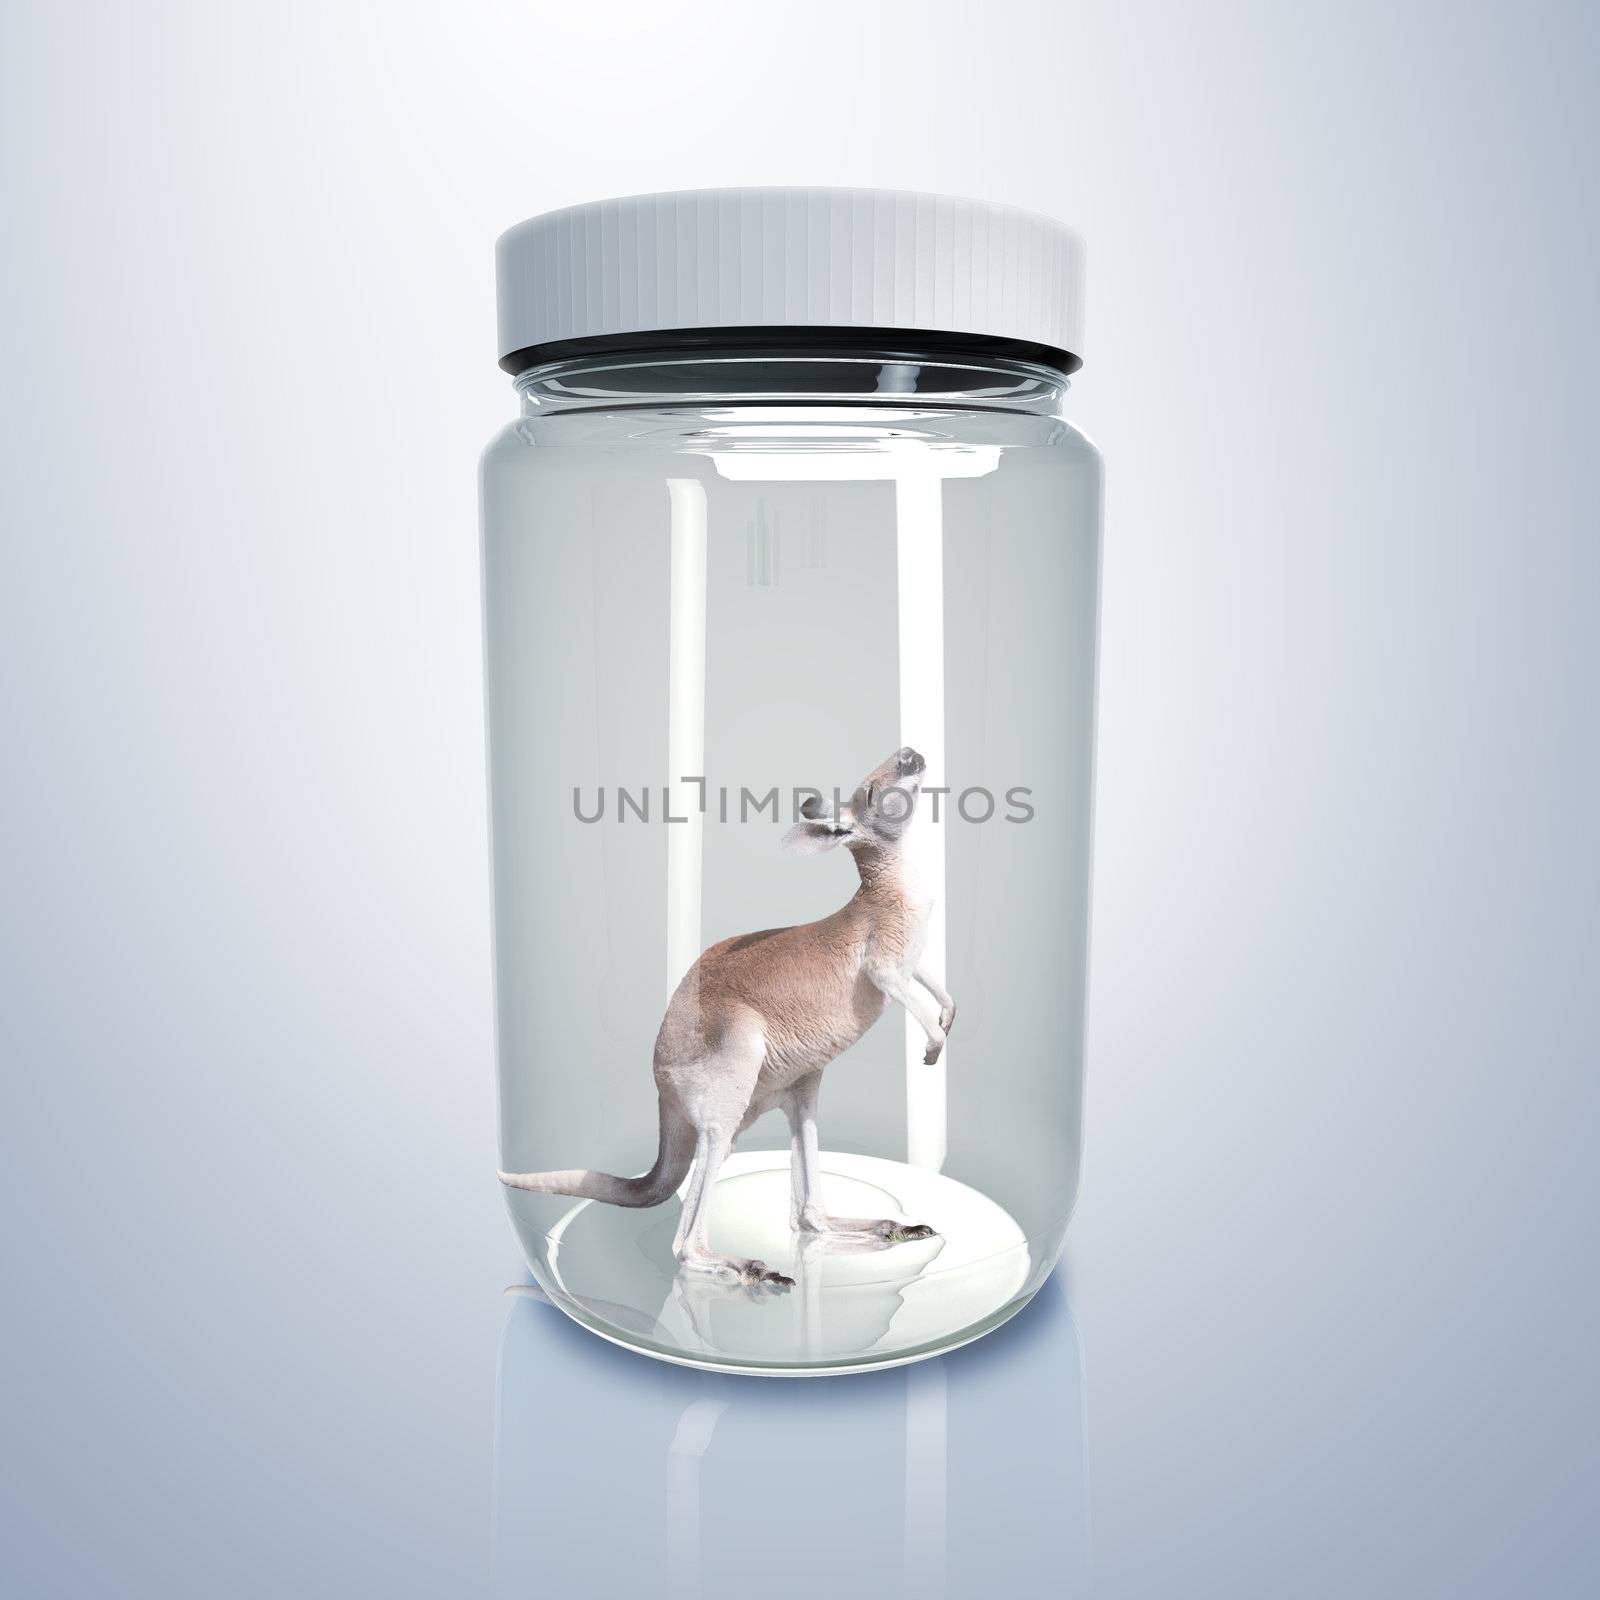 Kangaroo inside a glass jar by sergey_nivens